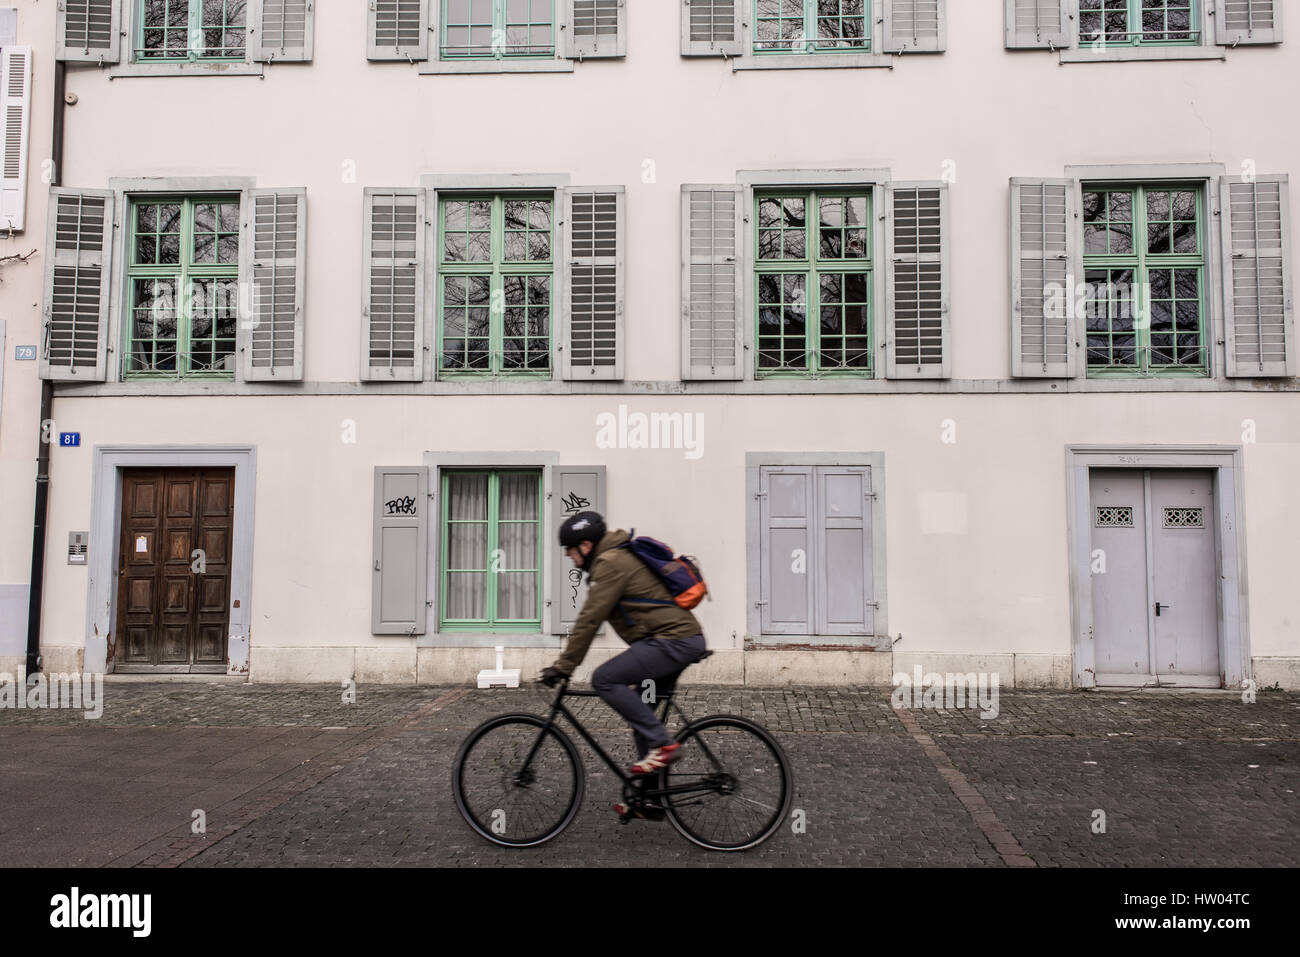 Vélo de l'homme en face d'une ancienne maison médiévale typiquement Suisse à Bâle en couleurs pastel, vieille ville, Altstadt Grand-Bâle, Suisse. Banque D'Images